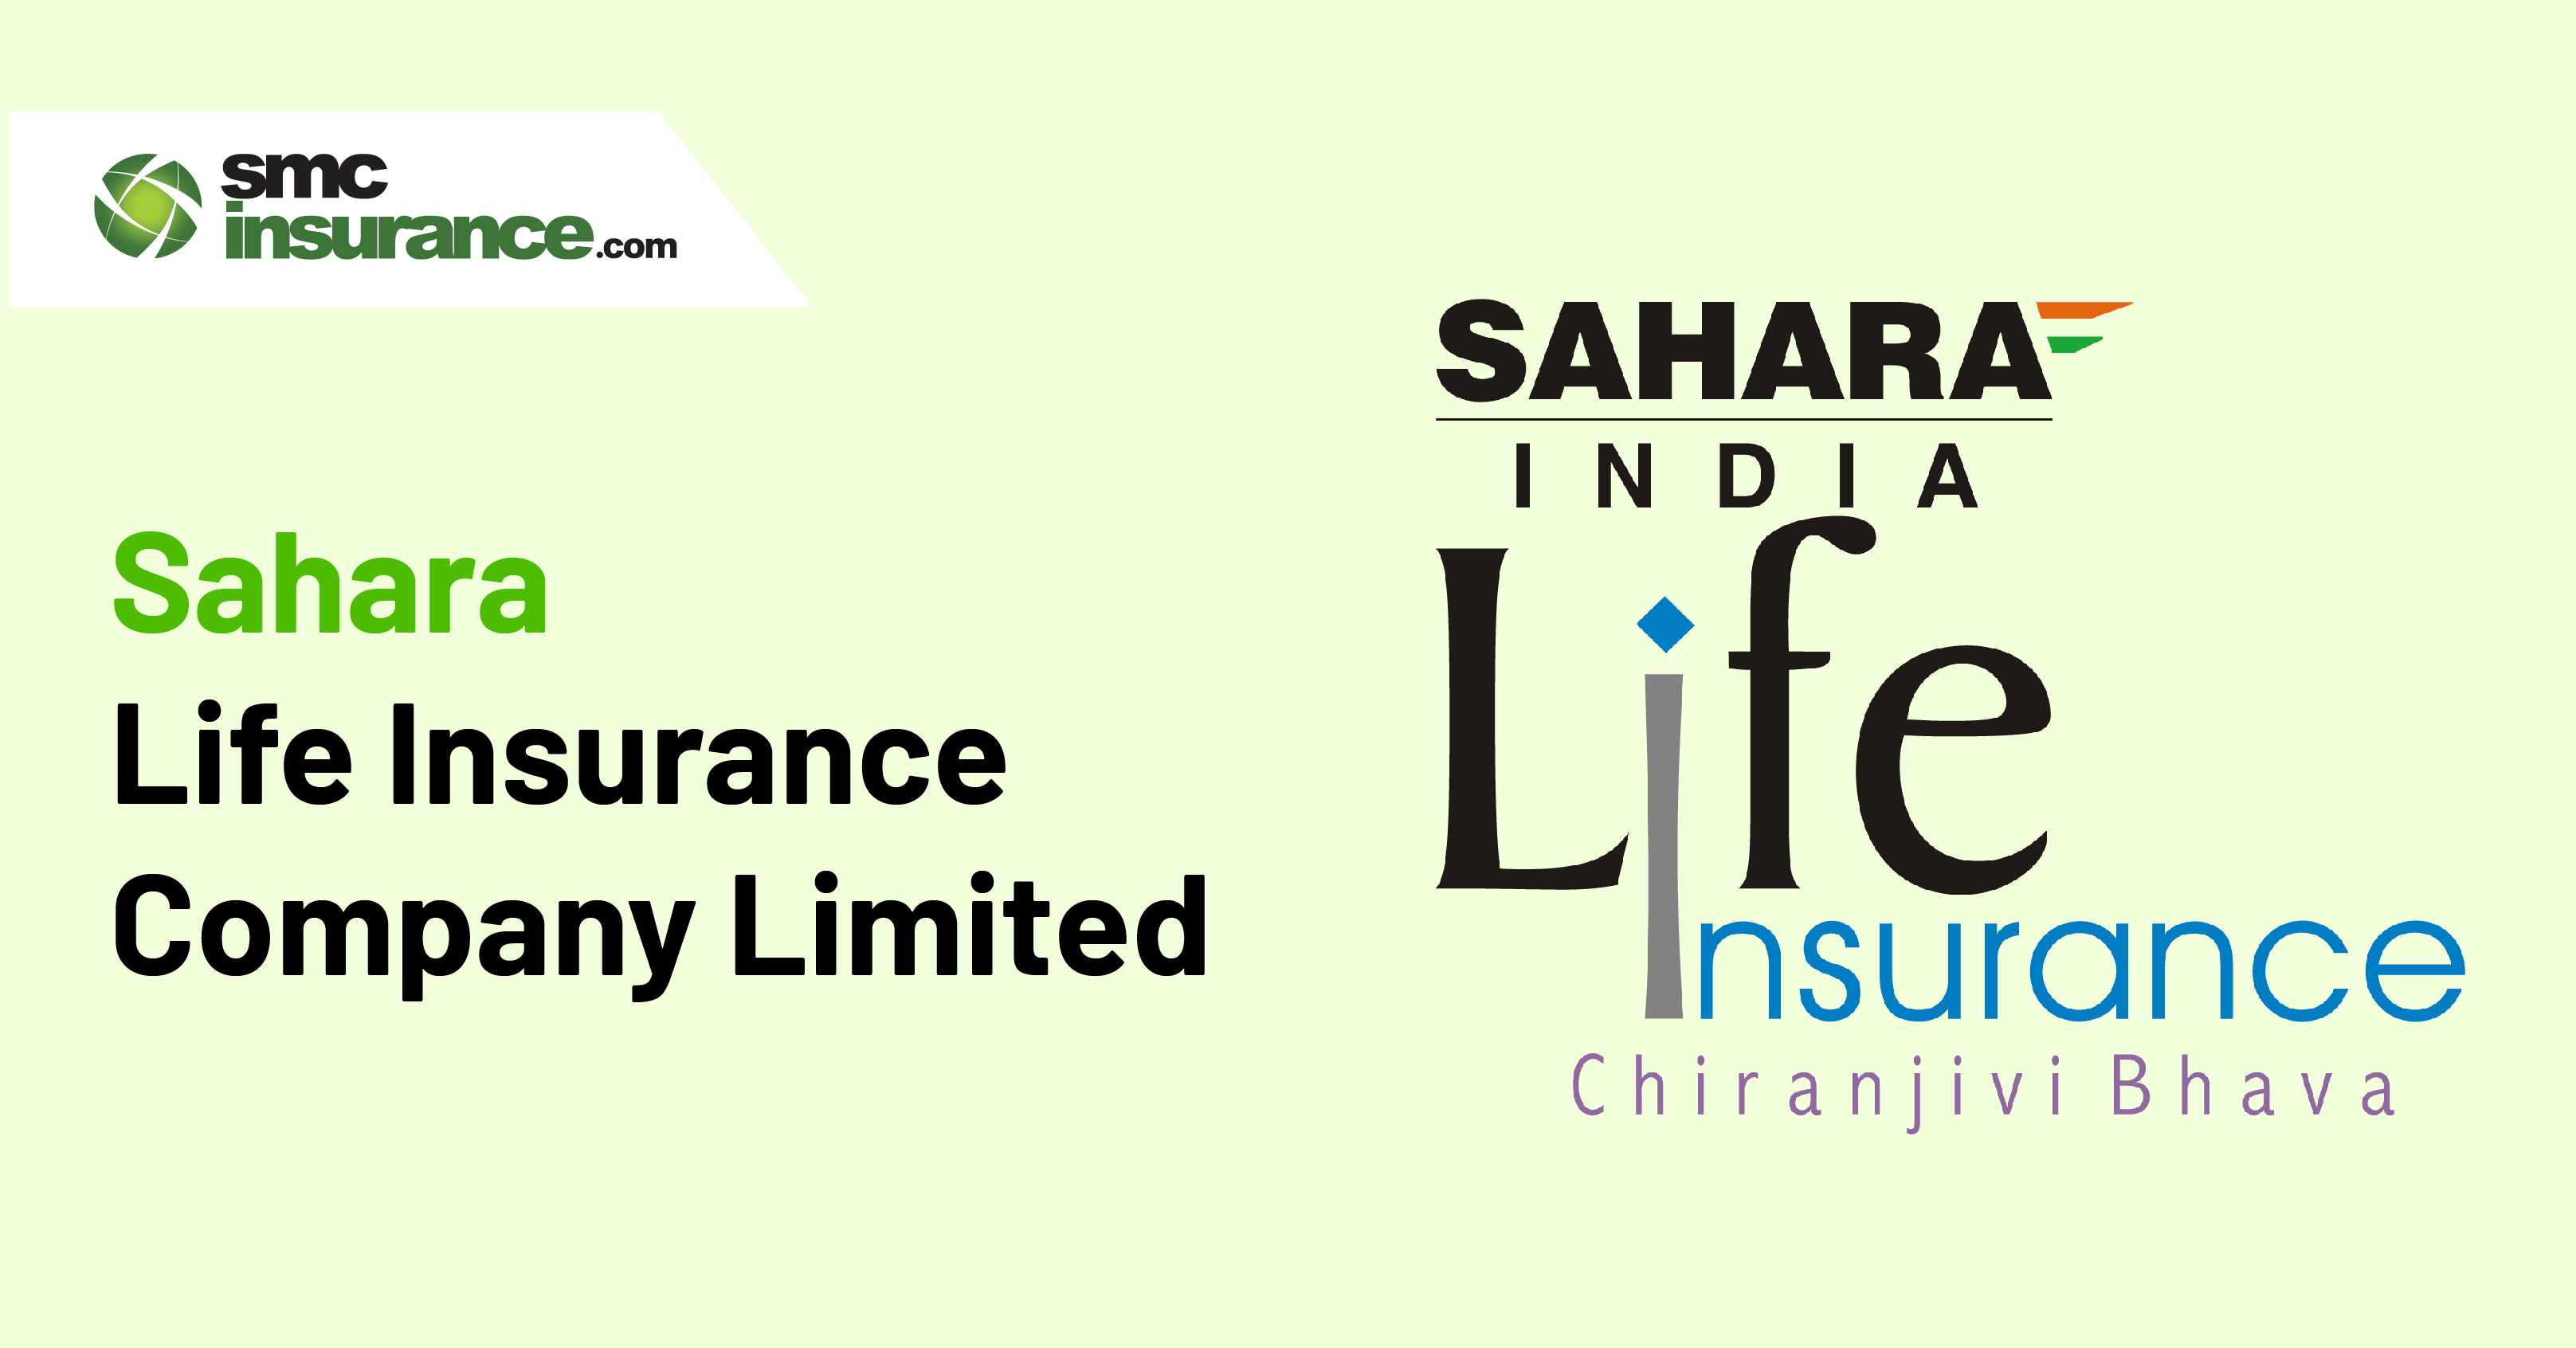 Sahara Life Insurance Company Limited